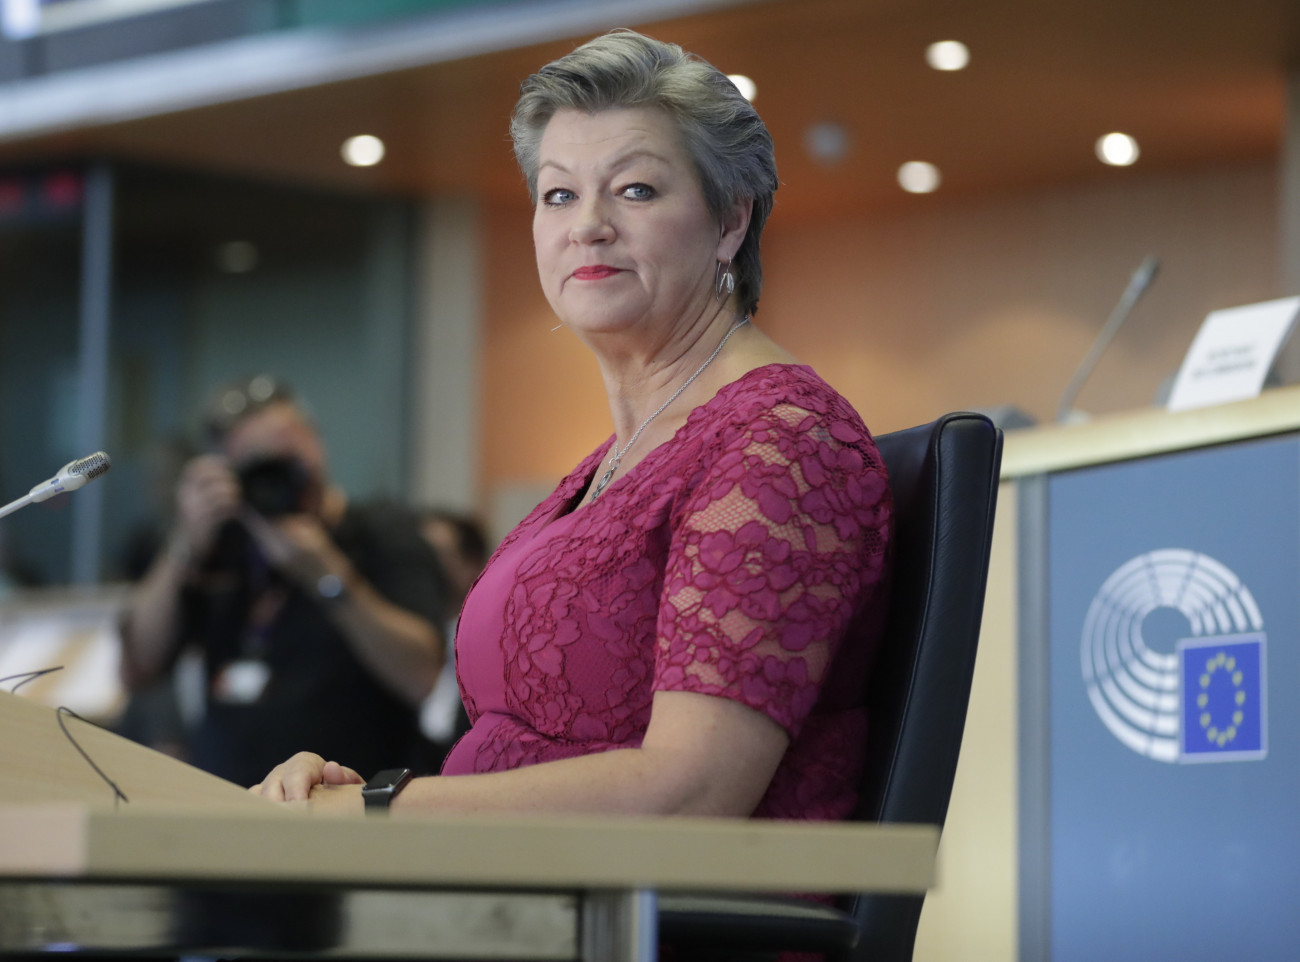 Az Európai Bizottság belügyi biztosának jelölt svéd Ylva Johansson az Európai Parlament illetékes bizottsága előtti meghallgatásán Brüsszelben 2019. október 1-jén. A belügyi biztos hatáskörébe tartoznak a határvédelemmel, a schengeni övezettel és részben a bevándorlással kapcsolatos kérések.
MTI/EPA/Olivier Hoslet